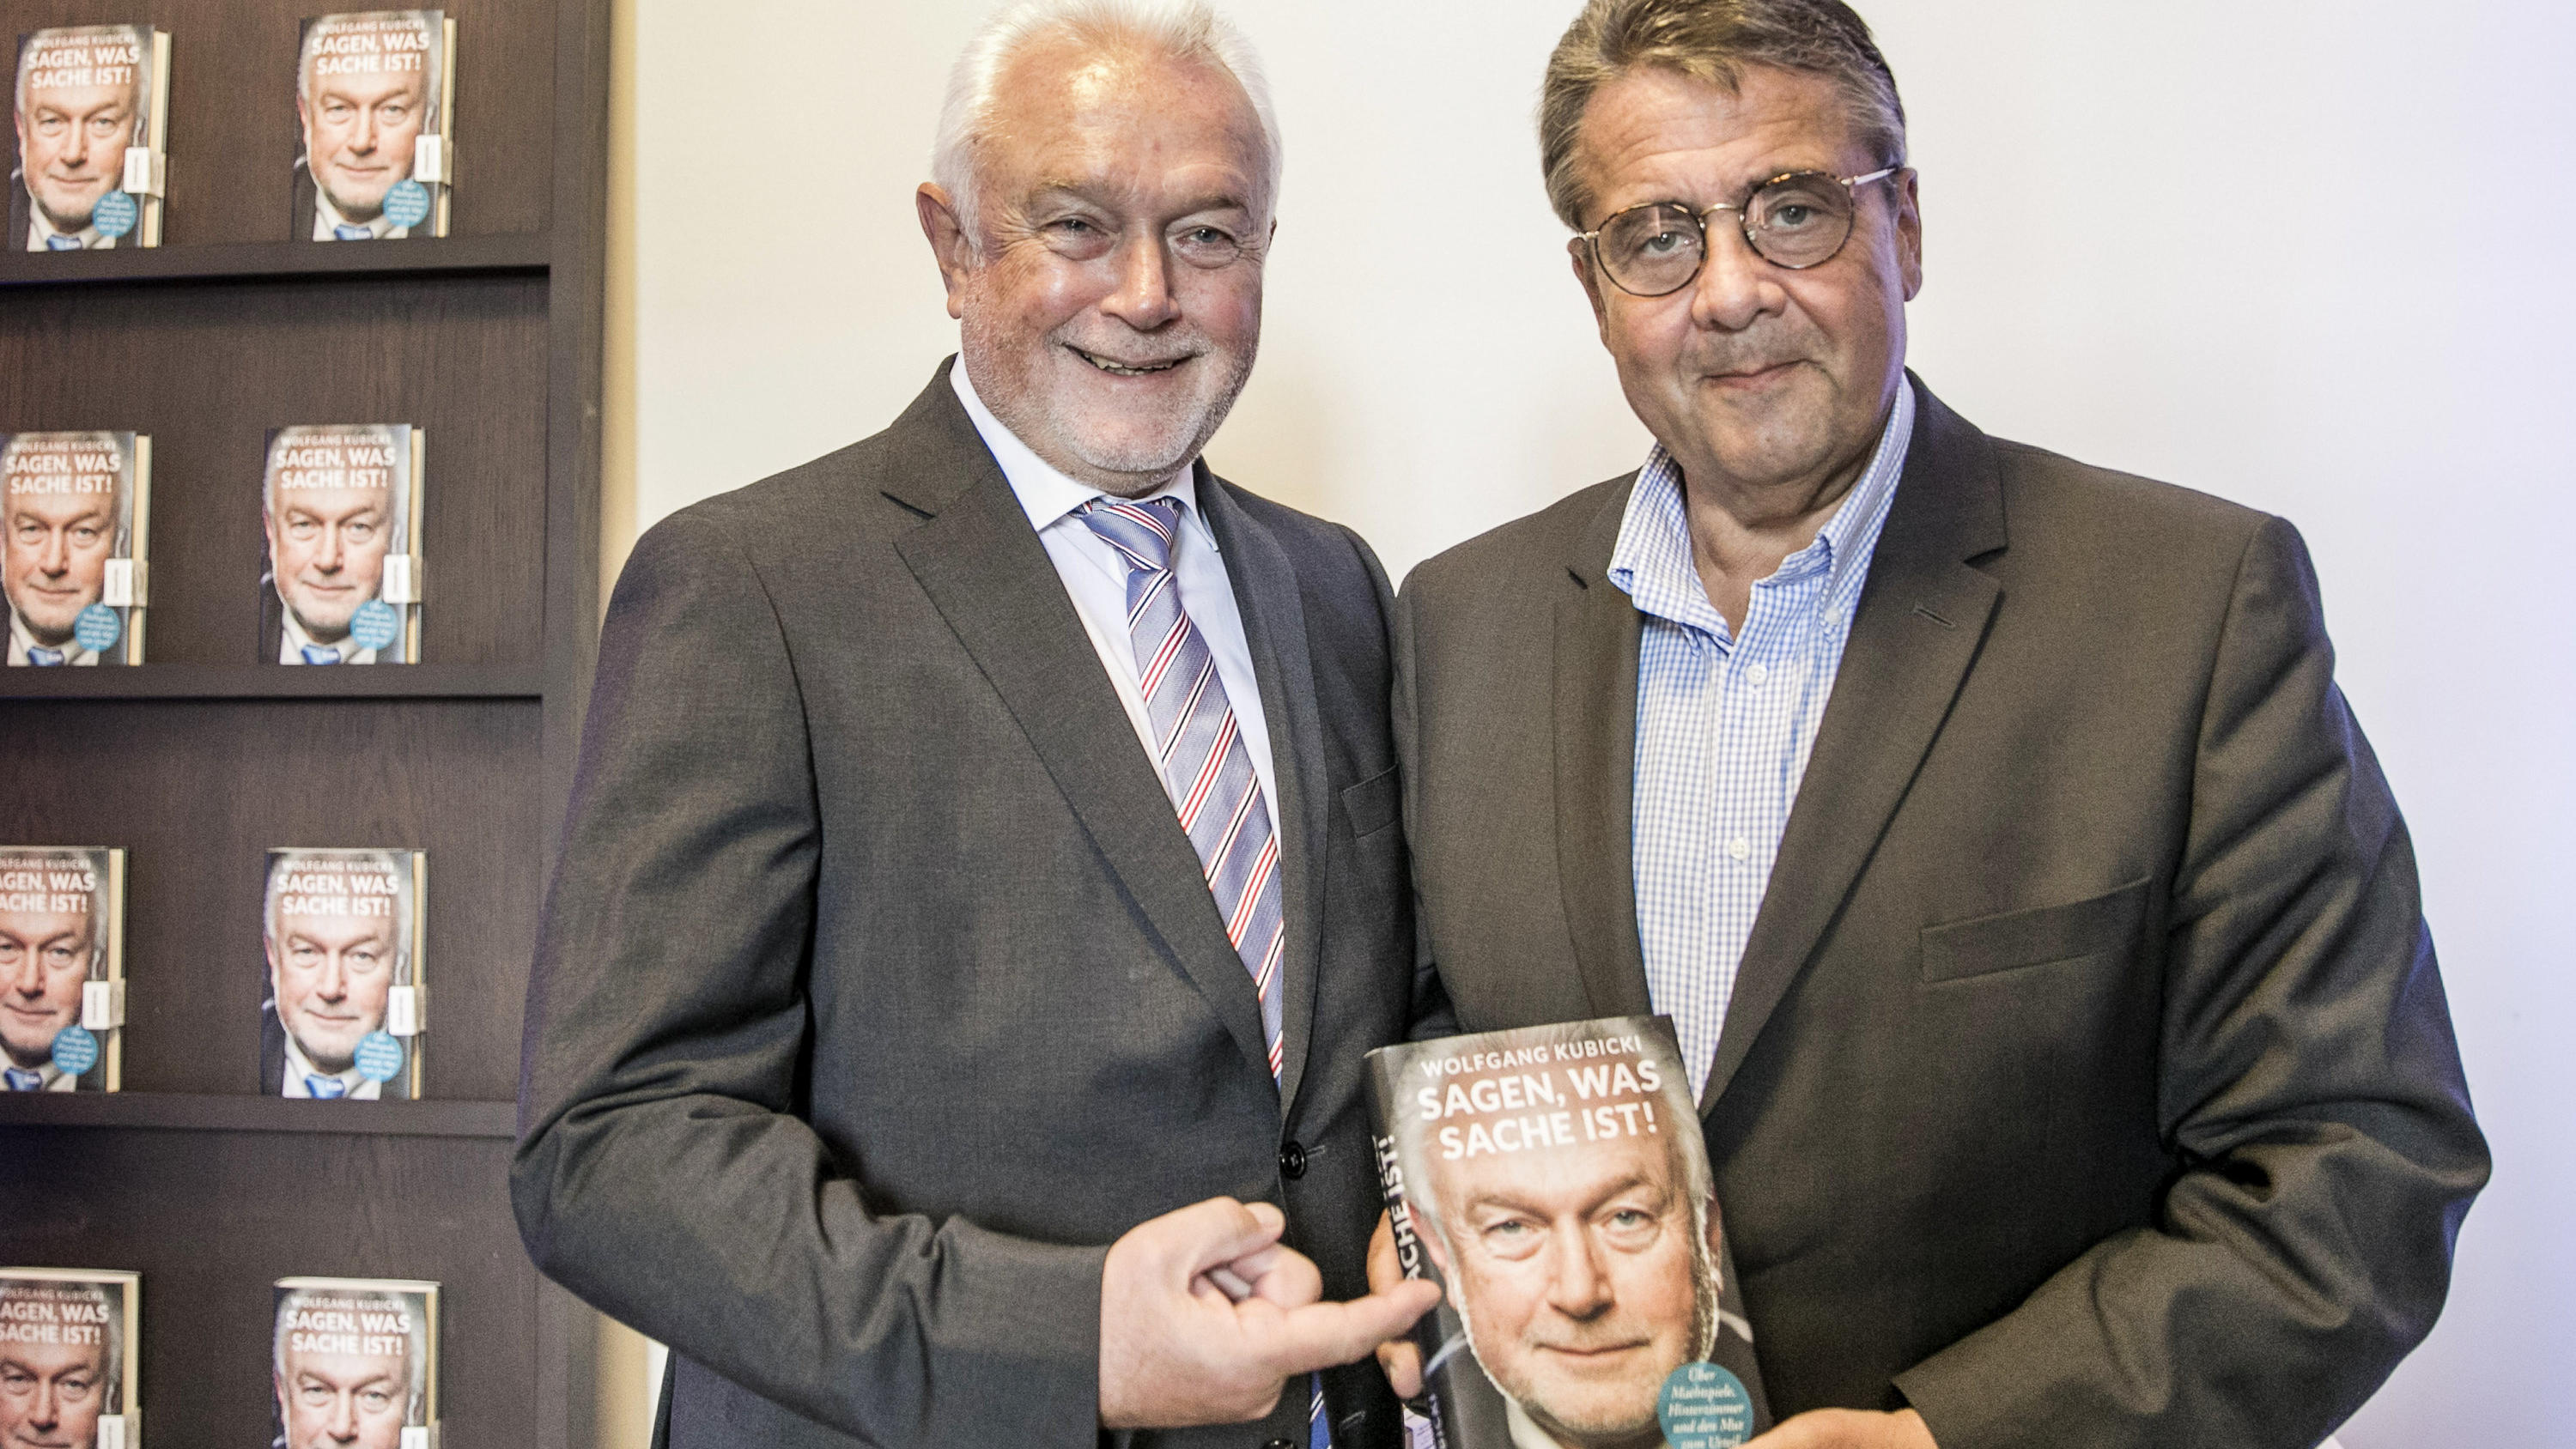 04.09.2019, Berlin: Siegmar Gabriel (r) hält das ein Exemplar des Buches mit dem Titel "Sagen was Sache ist!" von Wolfang Kubicki (l), FDP- Politiker und Buchautor, in der Hand. Foto: Carsten Koall/dpa +++ dpa-Bildfunk +++